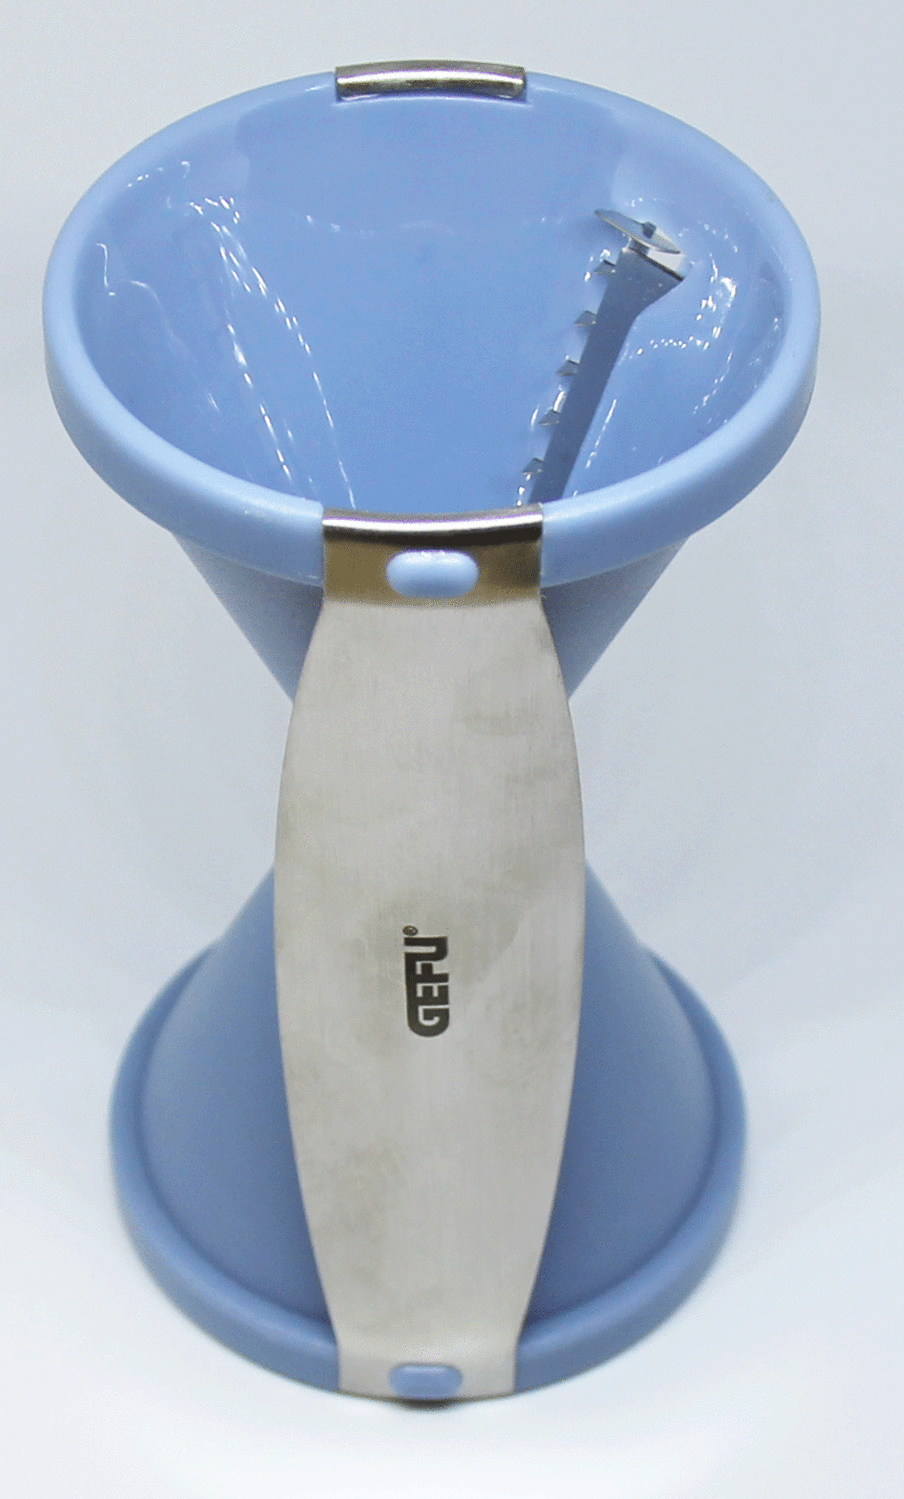 GEFU Spiralschneider Spirelli in blau KochForm bei